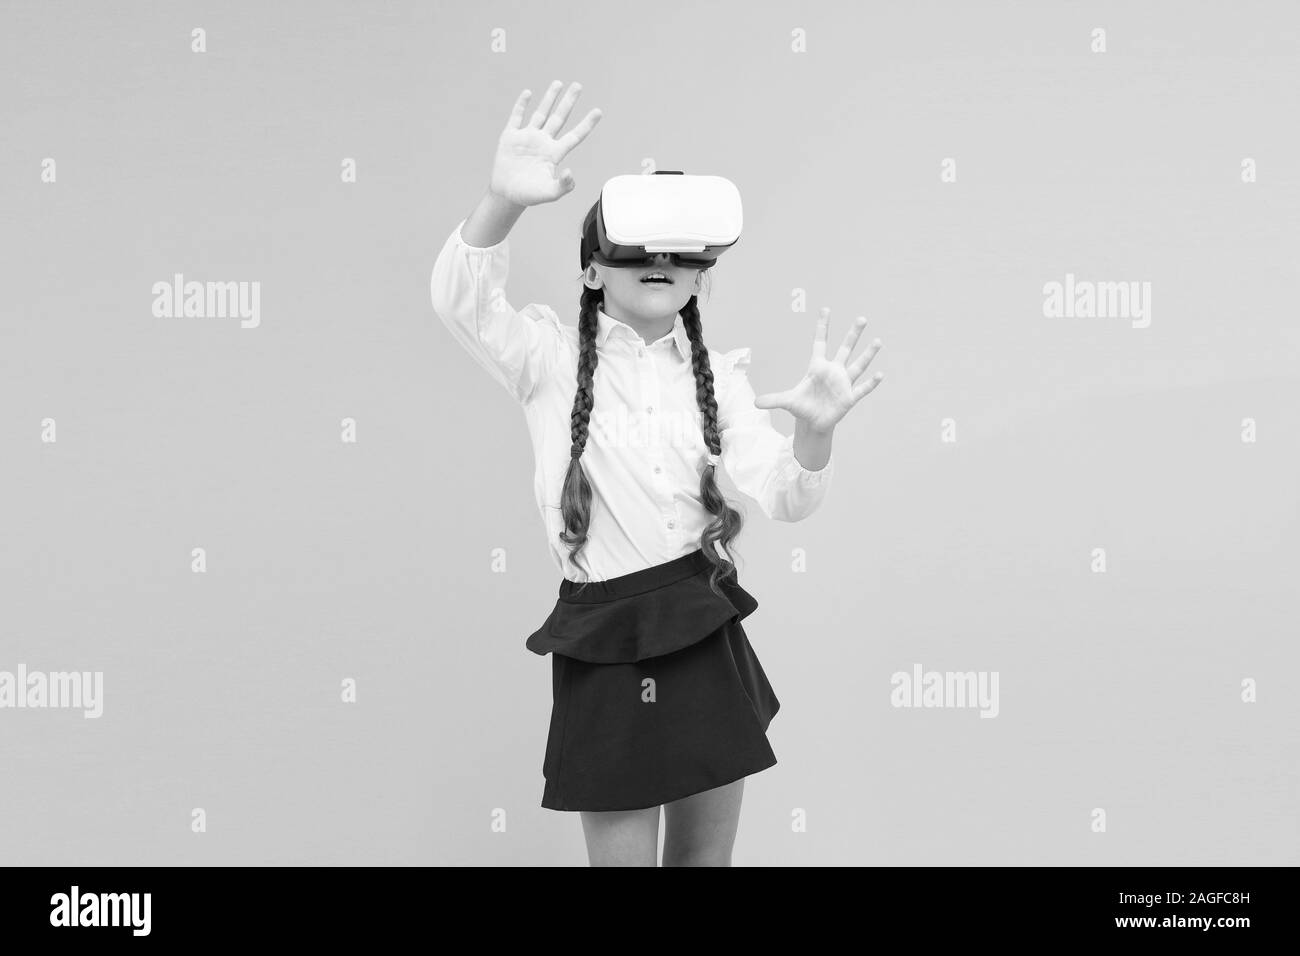 Ändern digitale Erlebnisse Art und Weise, wie wir lernen und erstellen. Digitale virtuelle Zukunft und Innovation. Kleines Kind im VR-Headset. Virtuelle Bildung. Einblicke in immersive Virtuelle Realität in den Klassenzimmern. Stockfoto